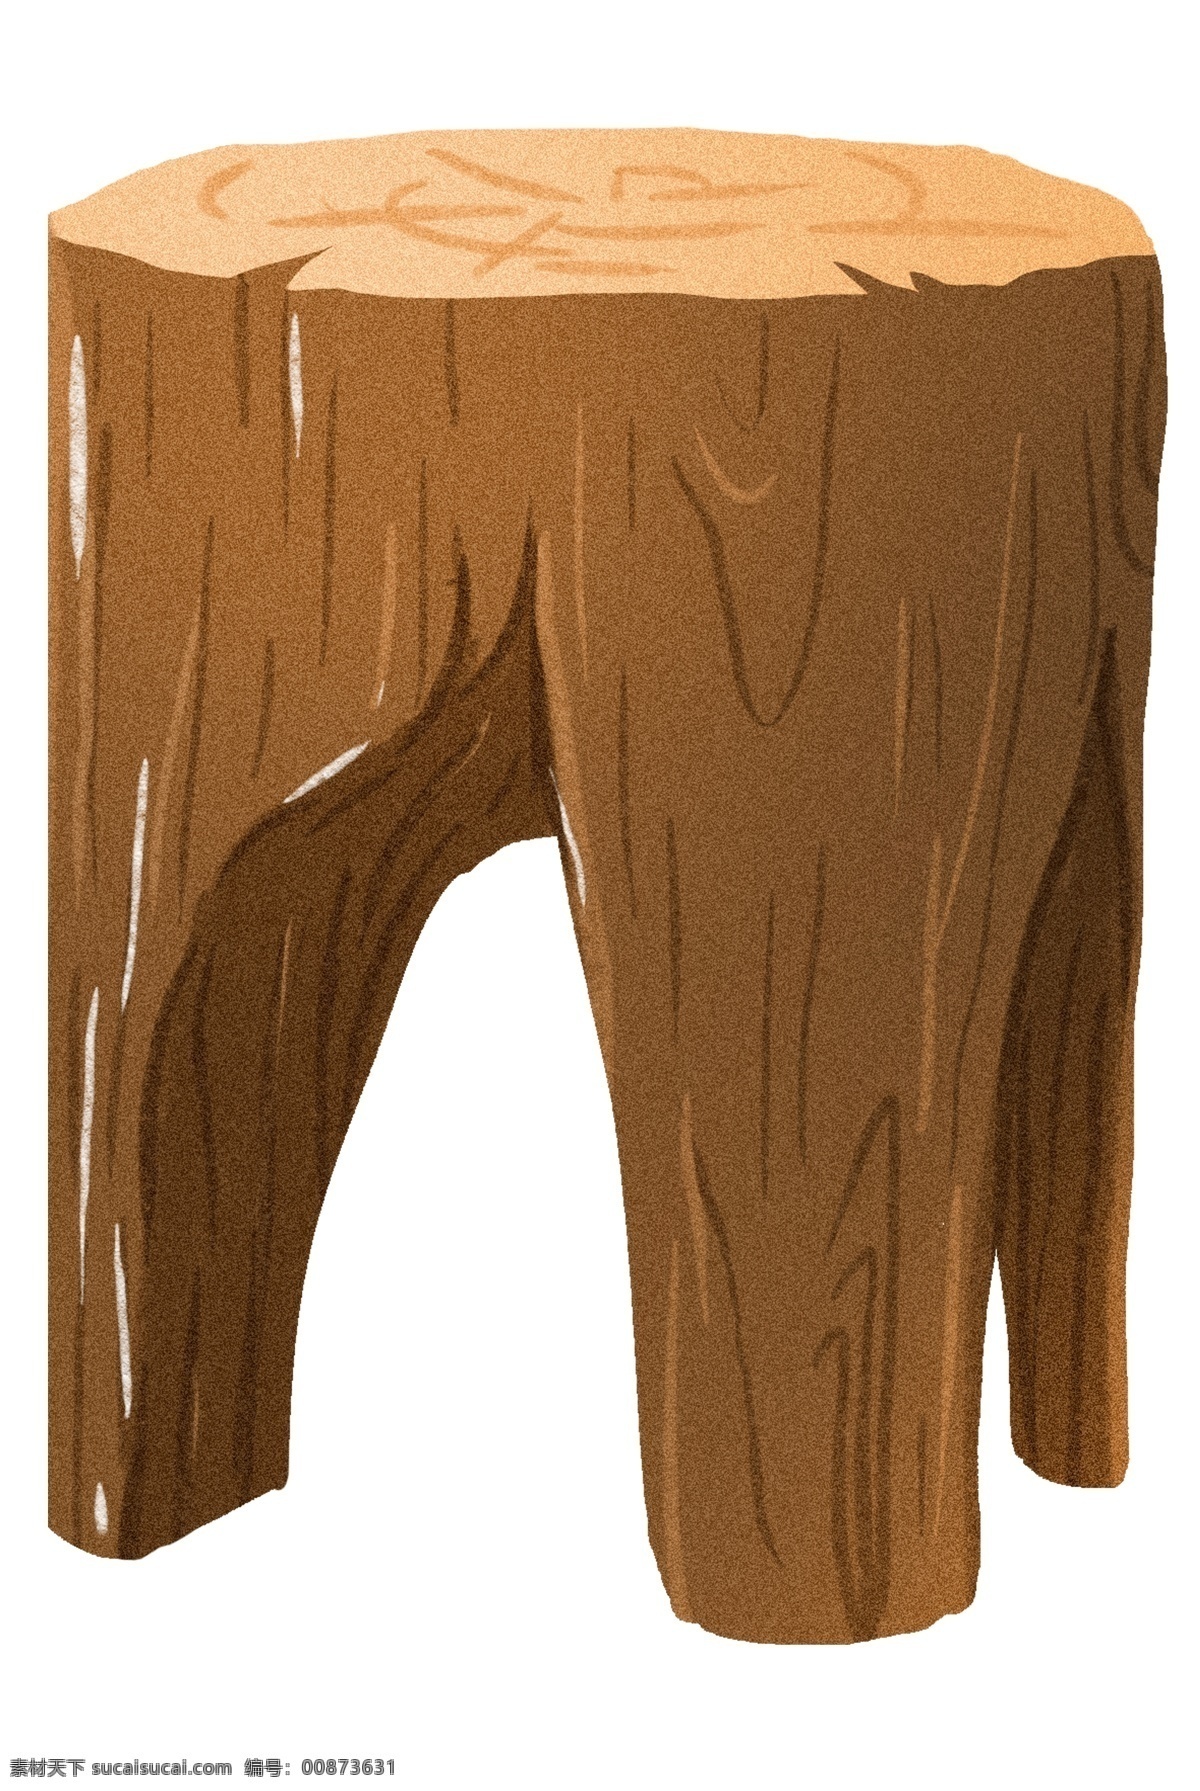 木质 家具 椅子 插画 木质的凳子 卡通插画 木质插画 木纹插画 实木产品 实木物品 实木的凳子